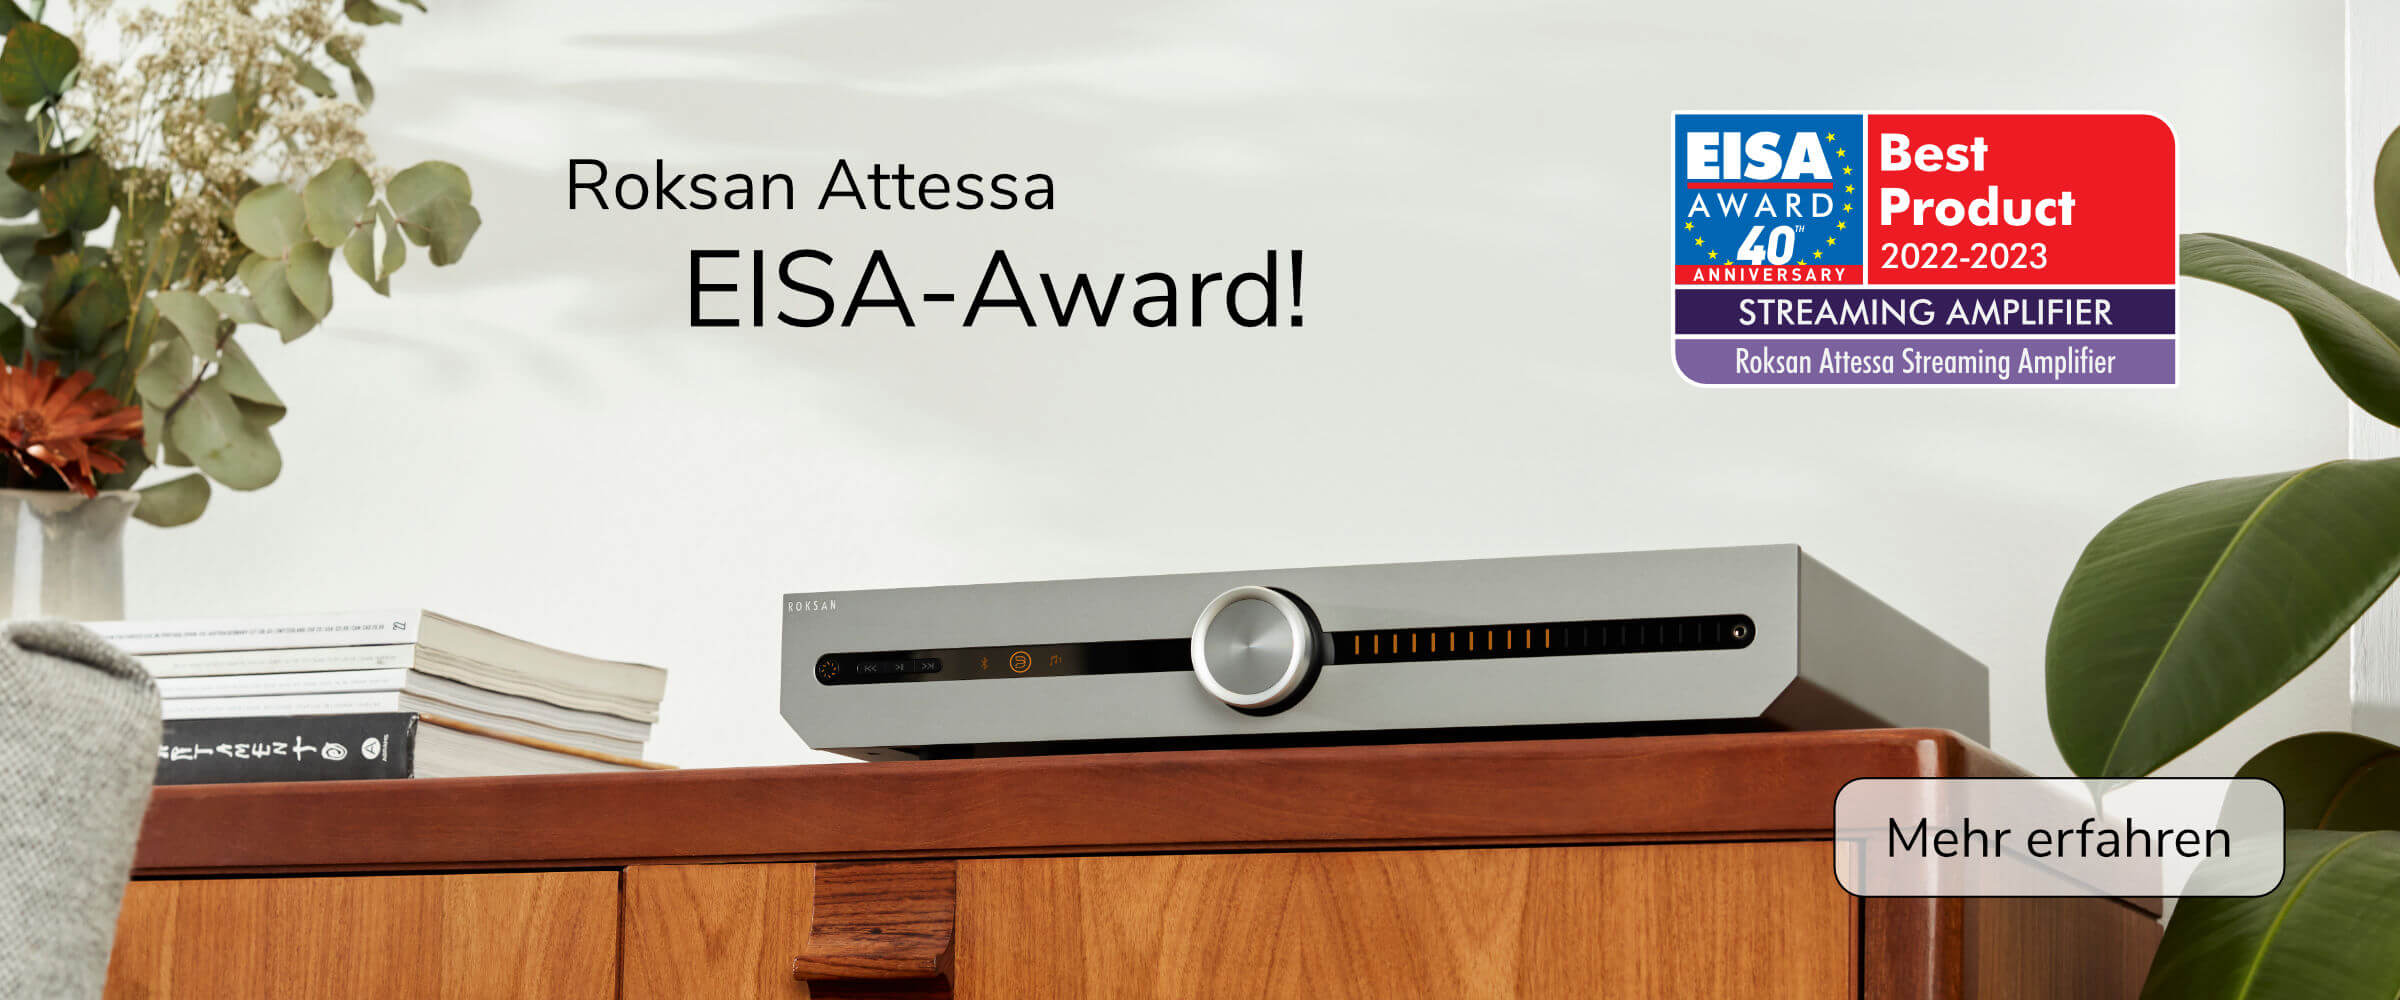 EISA-Award Roksan Attessa Streaming Amp